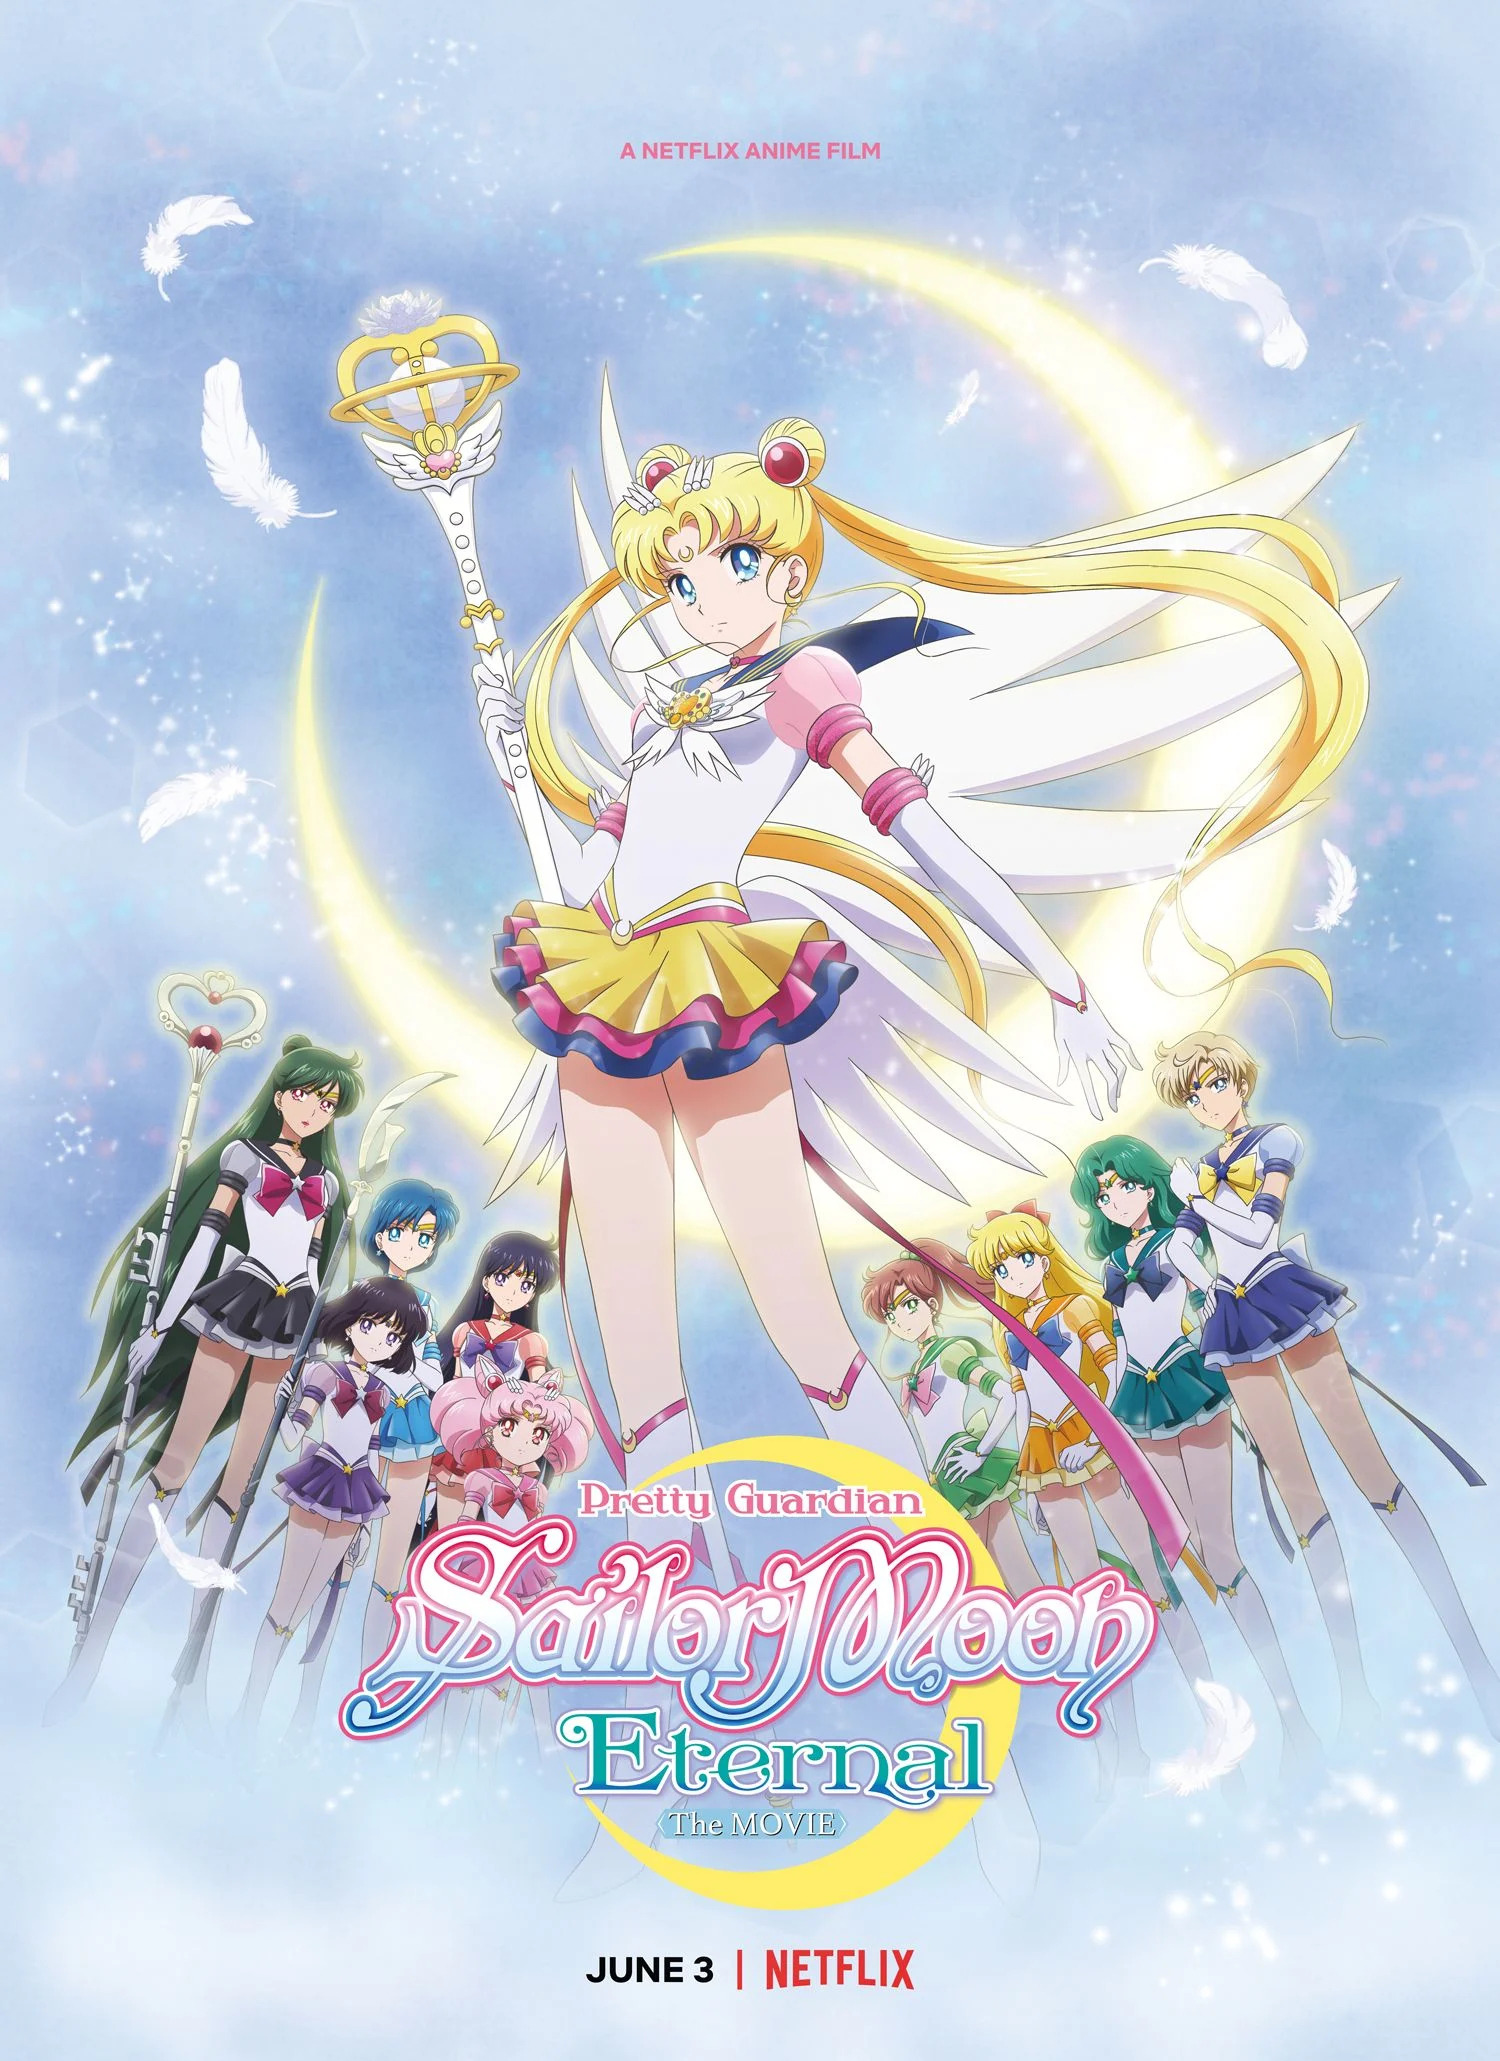 Mega Sized Movie Poster Image for Gekijouban Bishoujo Senshi Sailor Moon Eternal (#3 of 4)